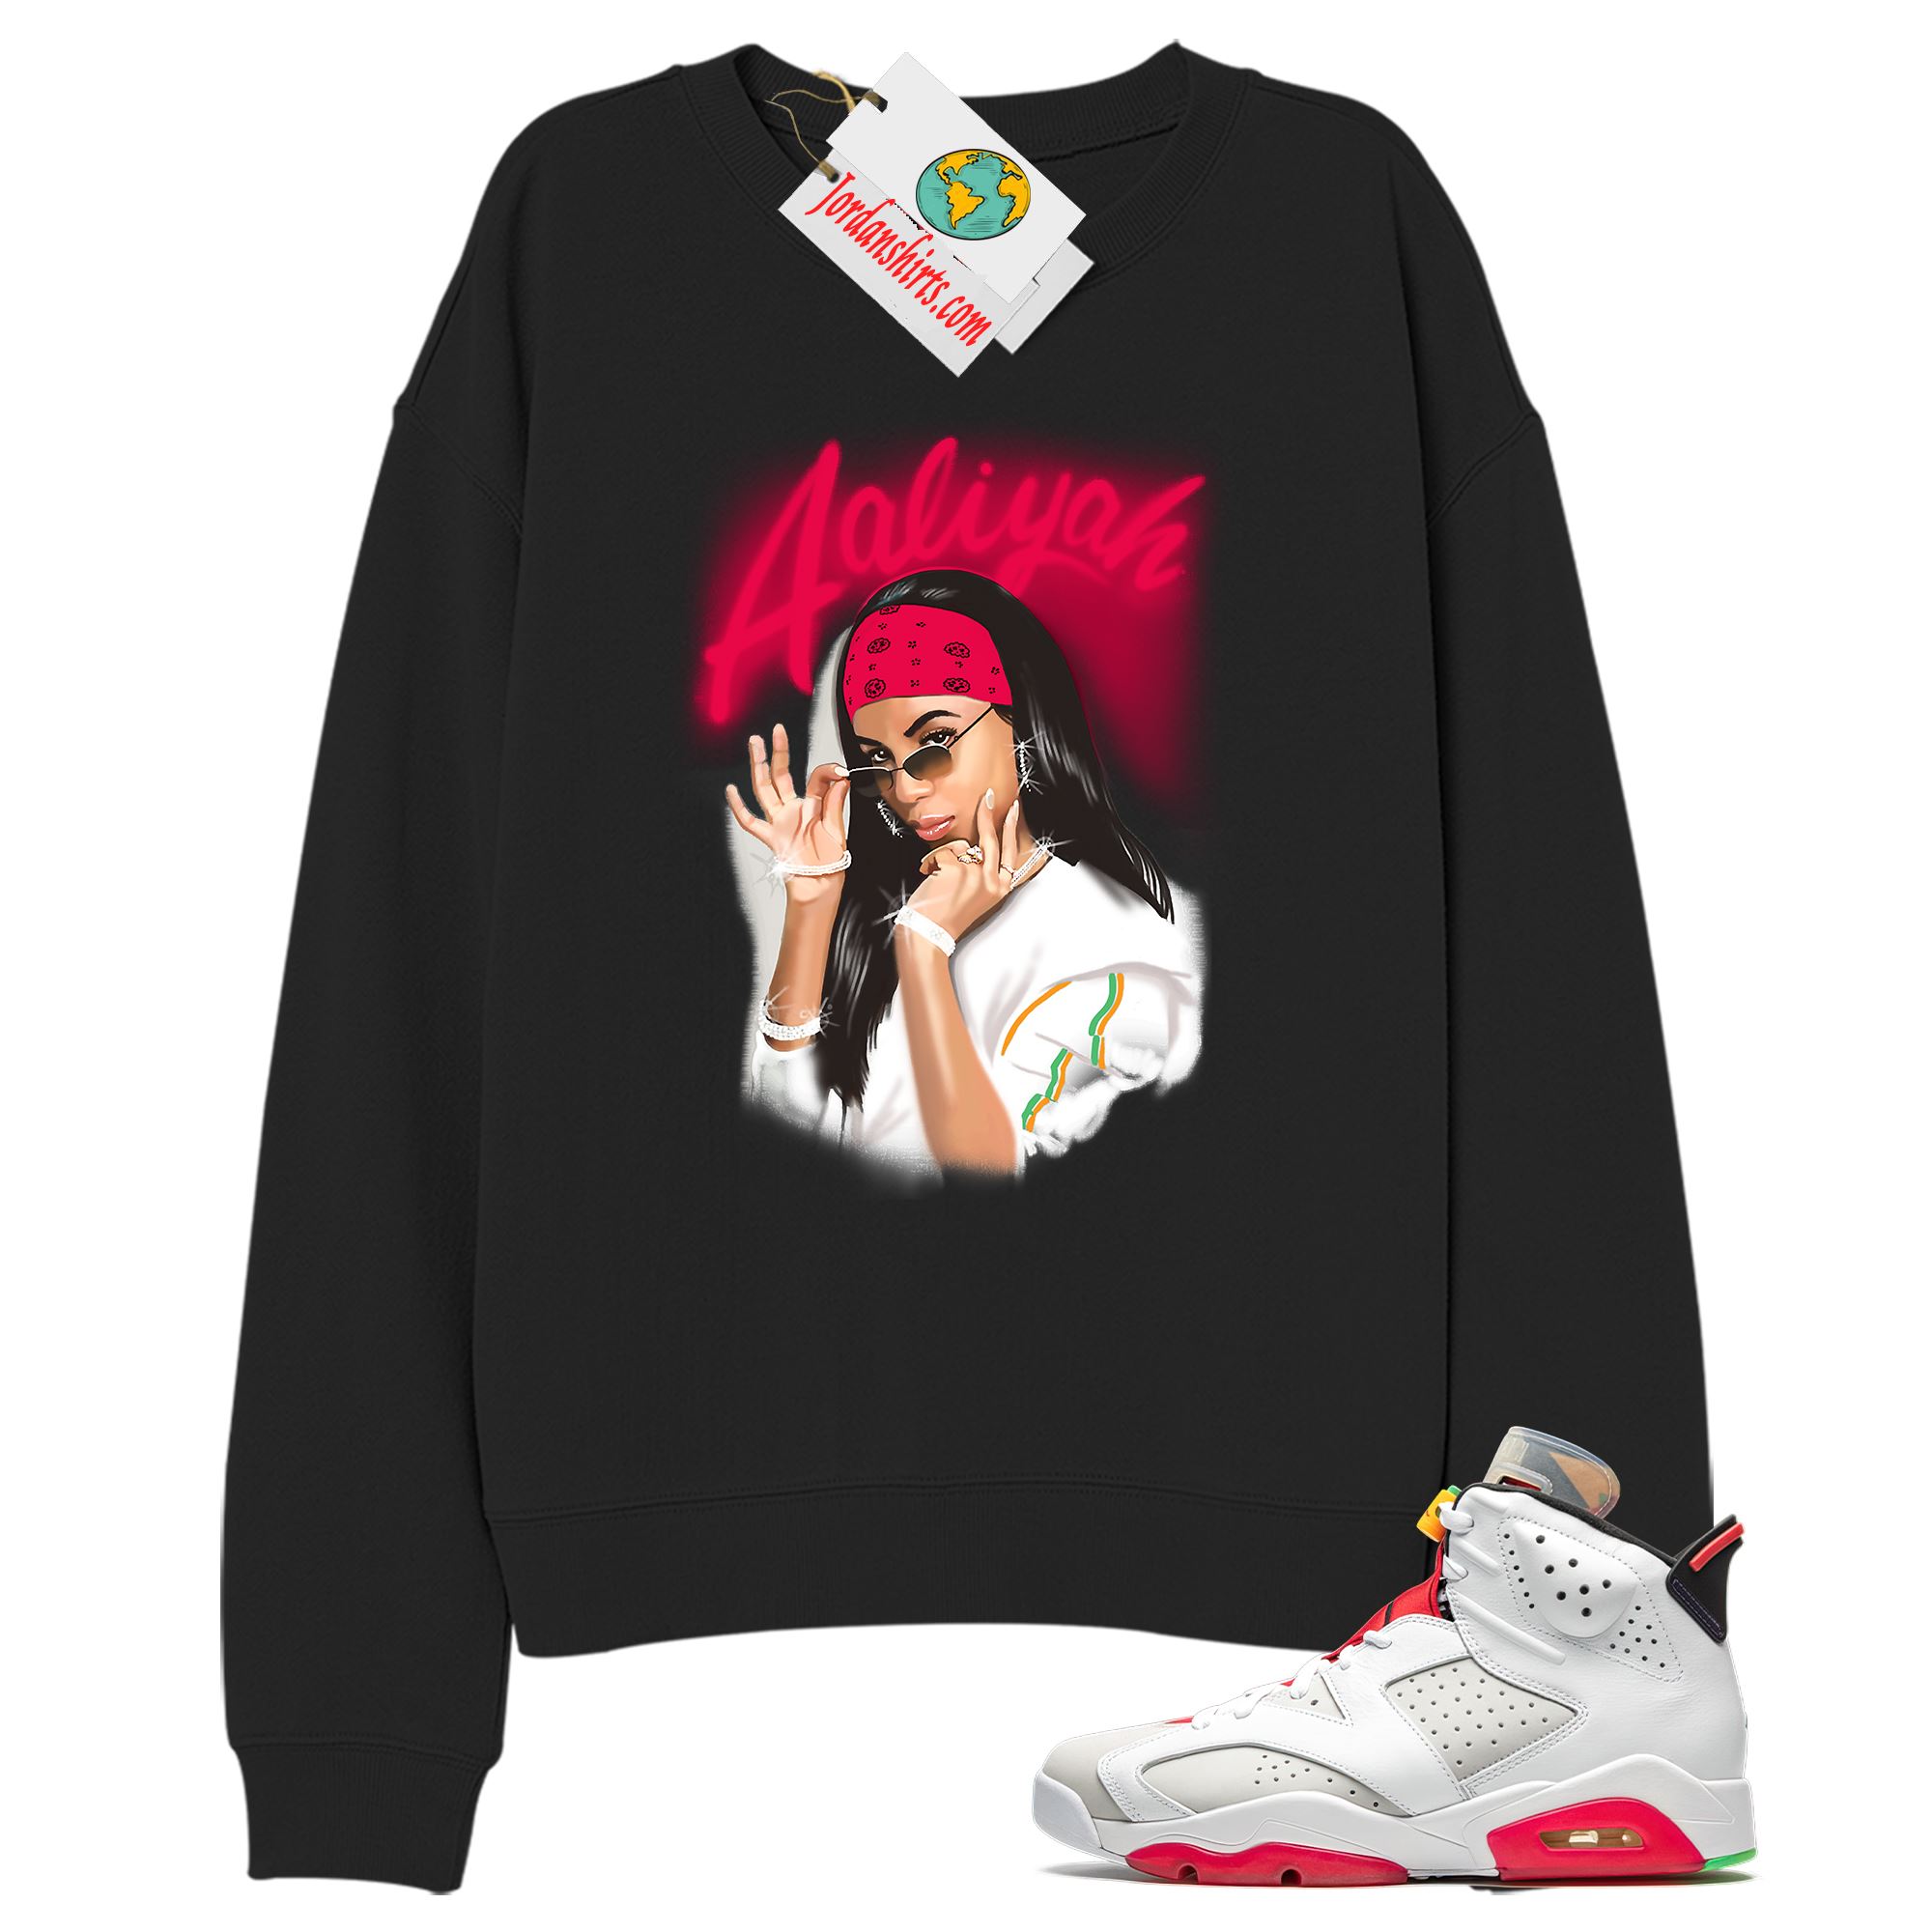 Jordan 6 Sweatshirt, Aaliyah Airbrush Black Sweatshirt Air Jordan 6 Hare 6s Size Up To 5xl